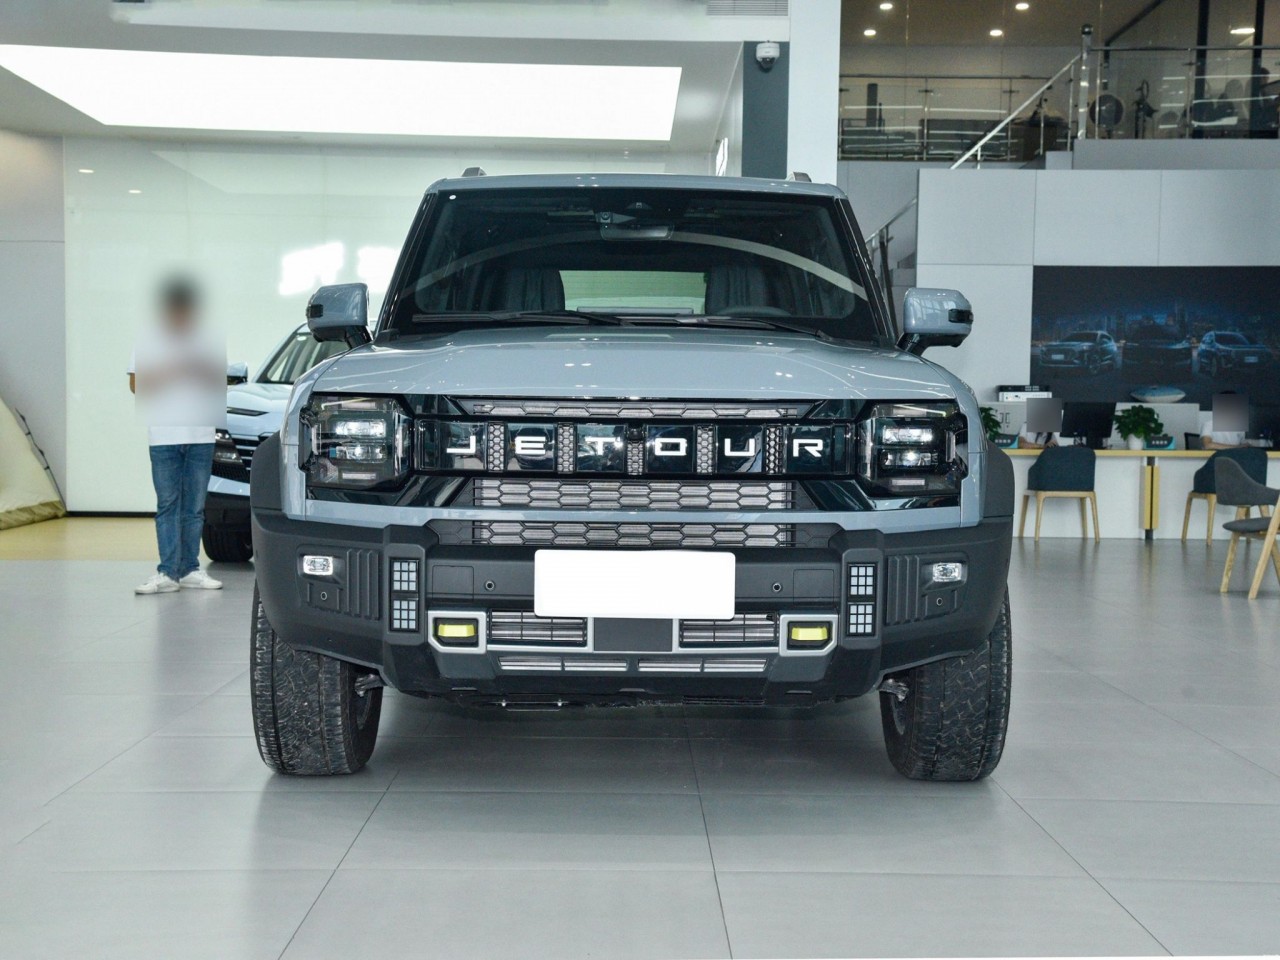 Jetour Traveller – SUV đến từ Trung Quốc có thiết kế giống Ford Bronco